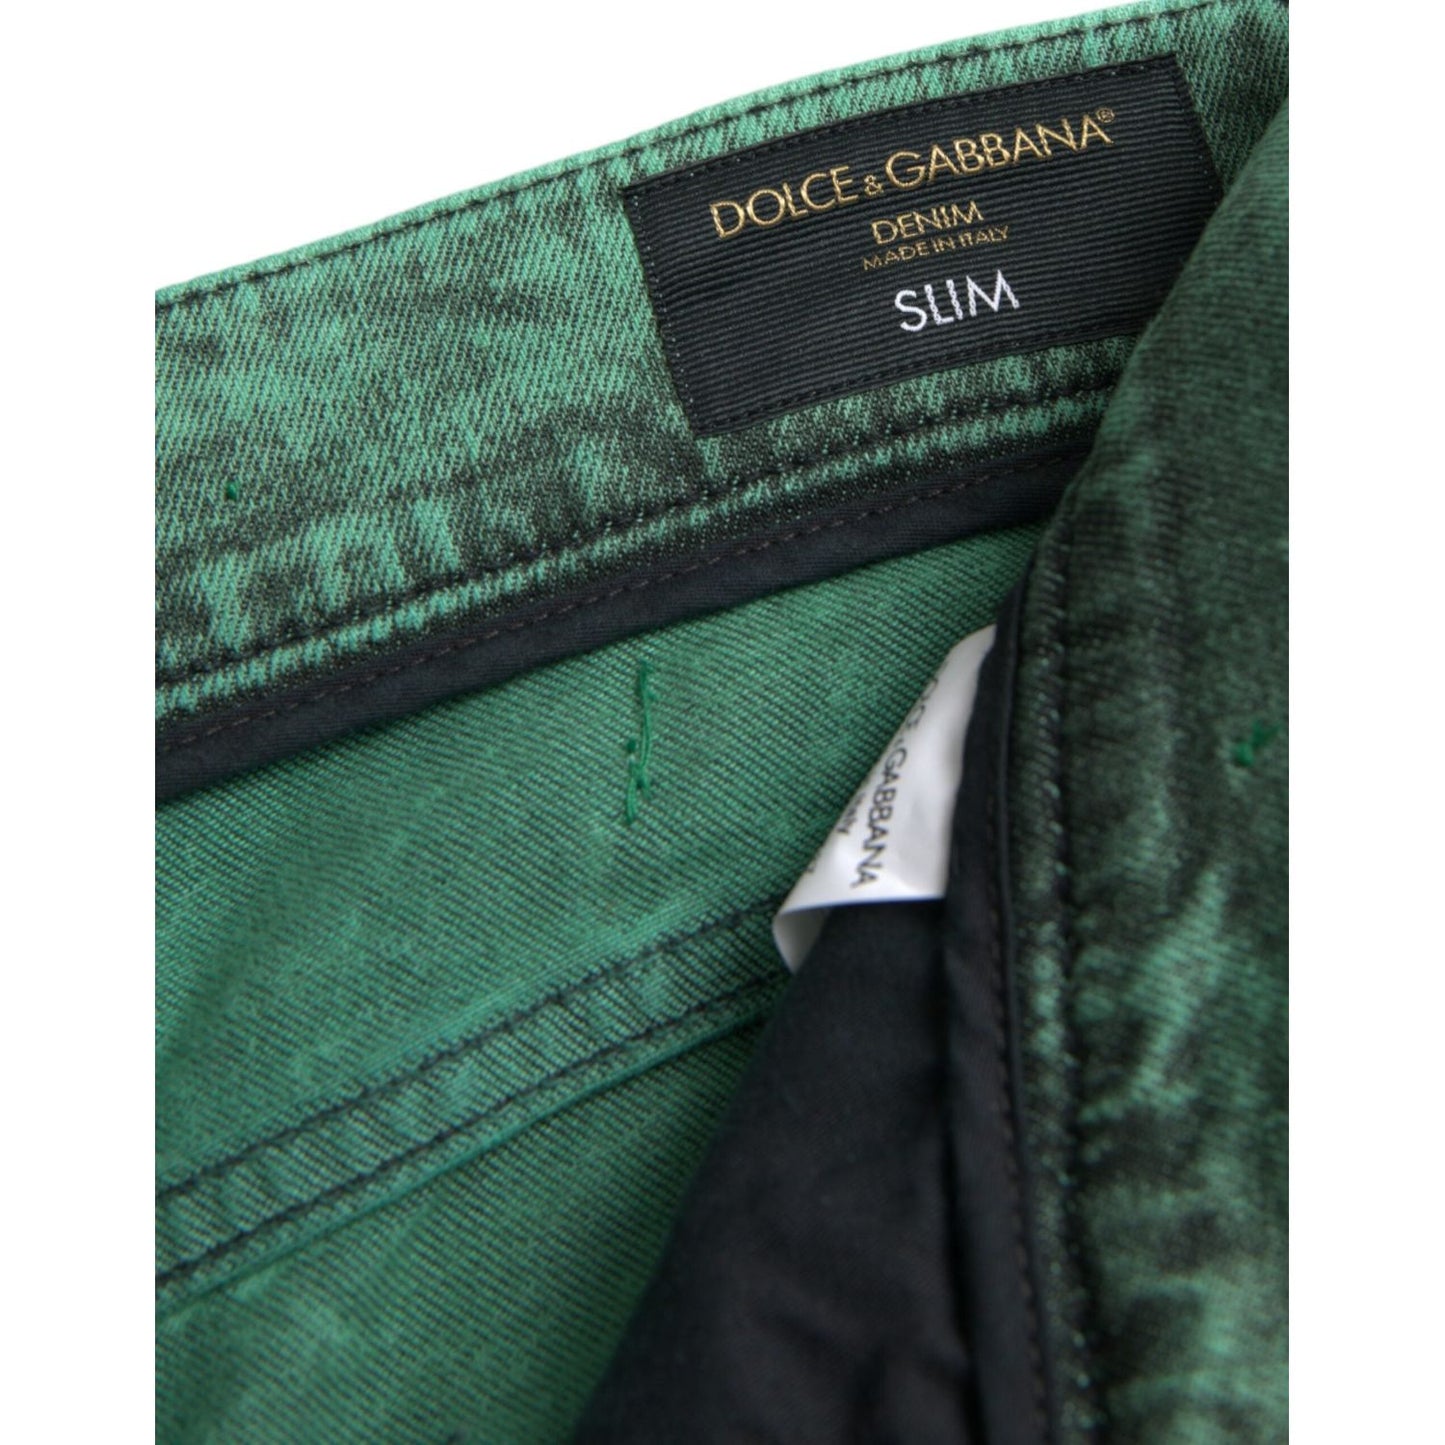 Dolce & GabbanaGreen Crystals Cotton Stretch Slim JeansMcRichard Designer Brands£1079.00